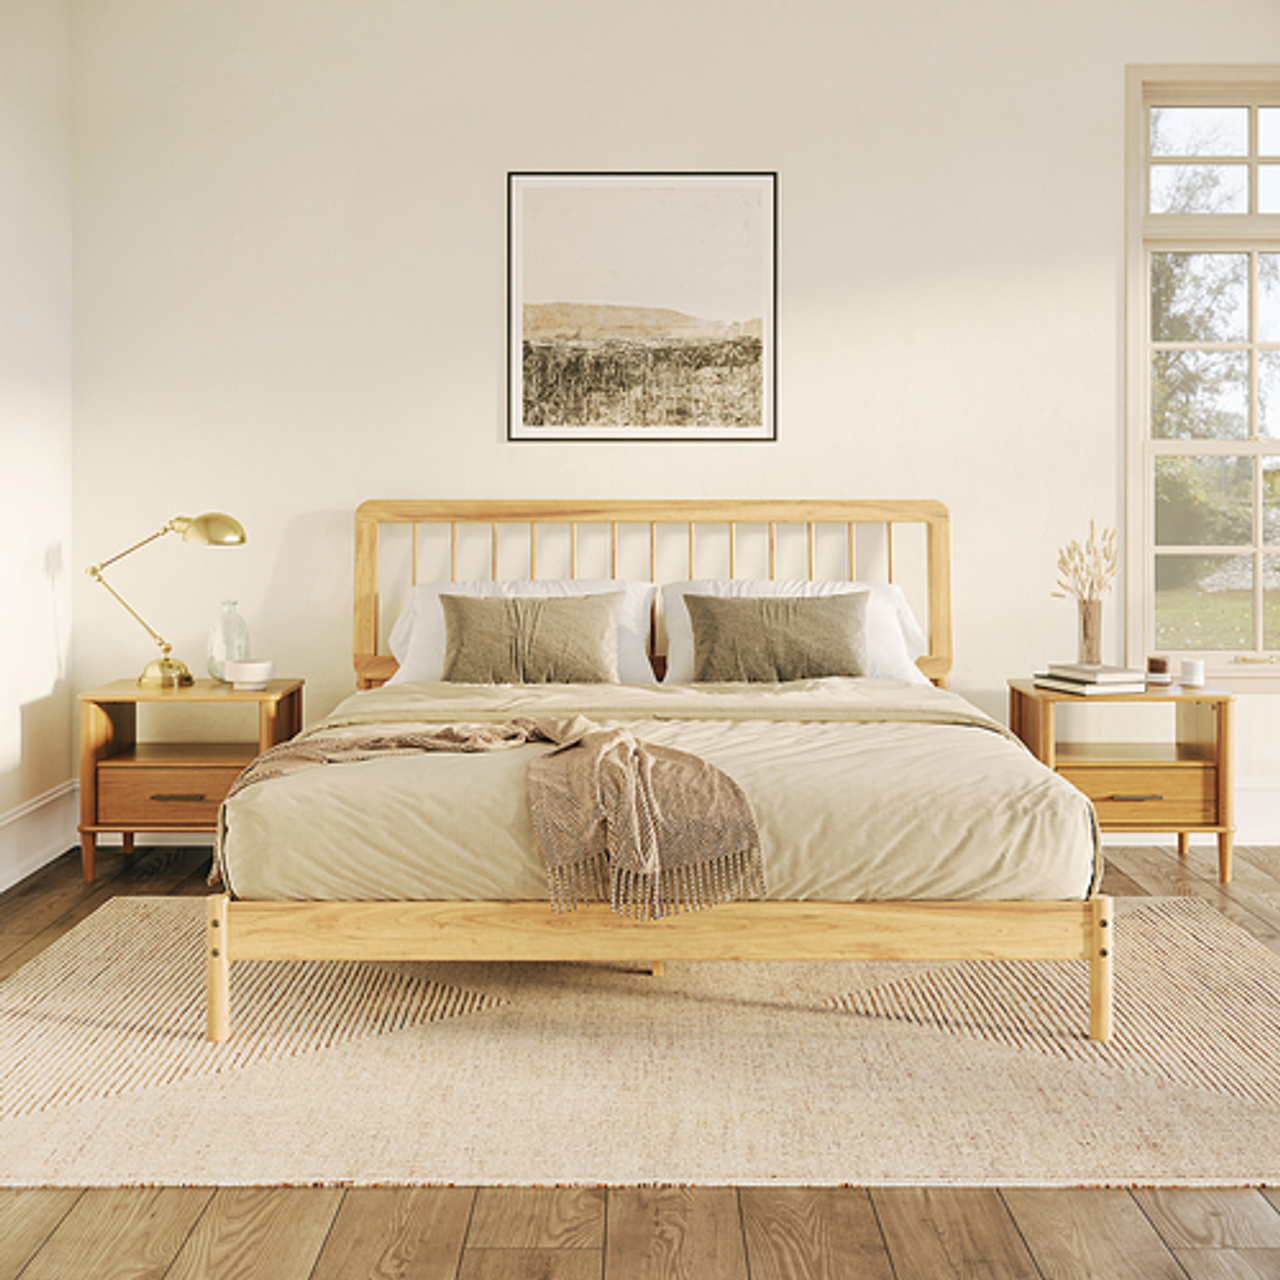 Walker Edison - Mid-Century Modern Slatted Solid Wood King Bedframe - Natural Pine